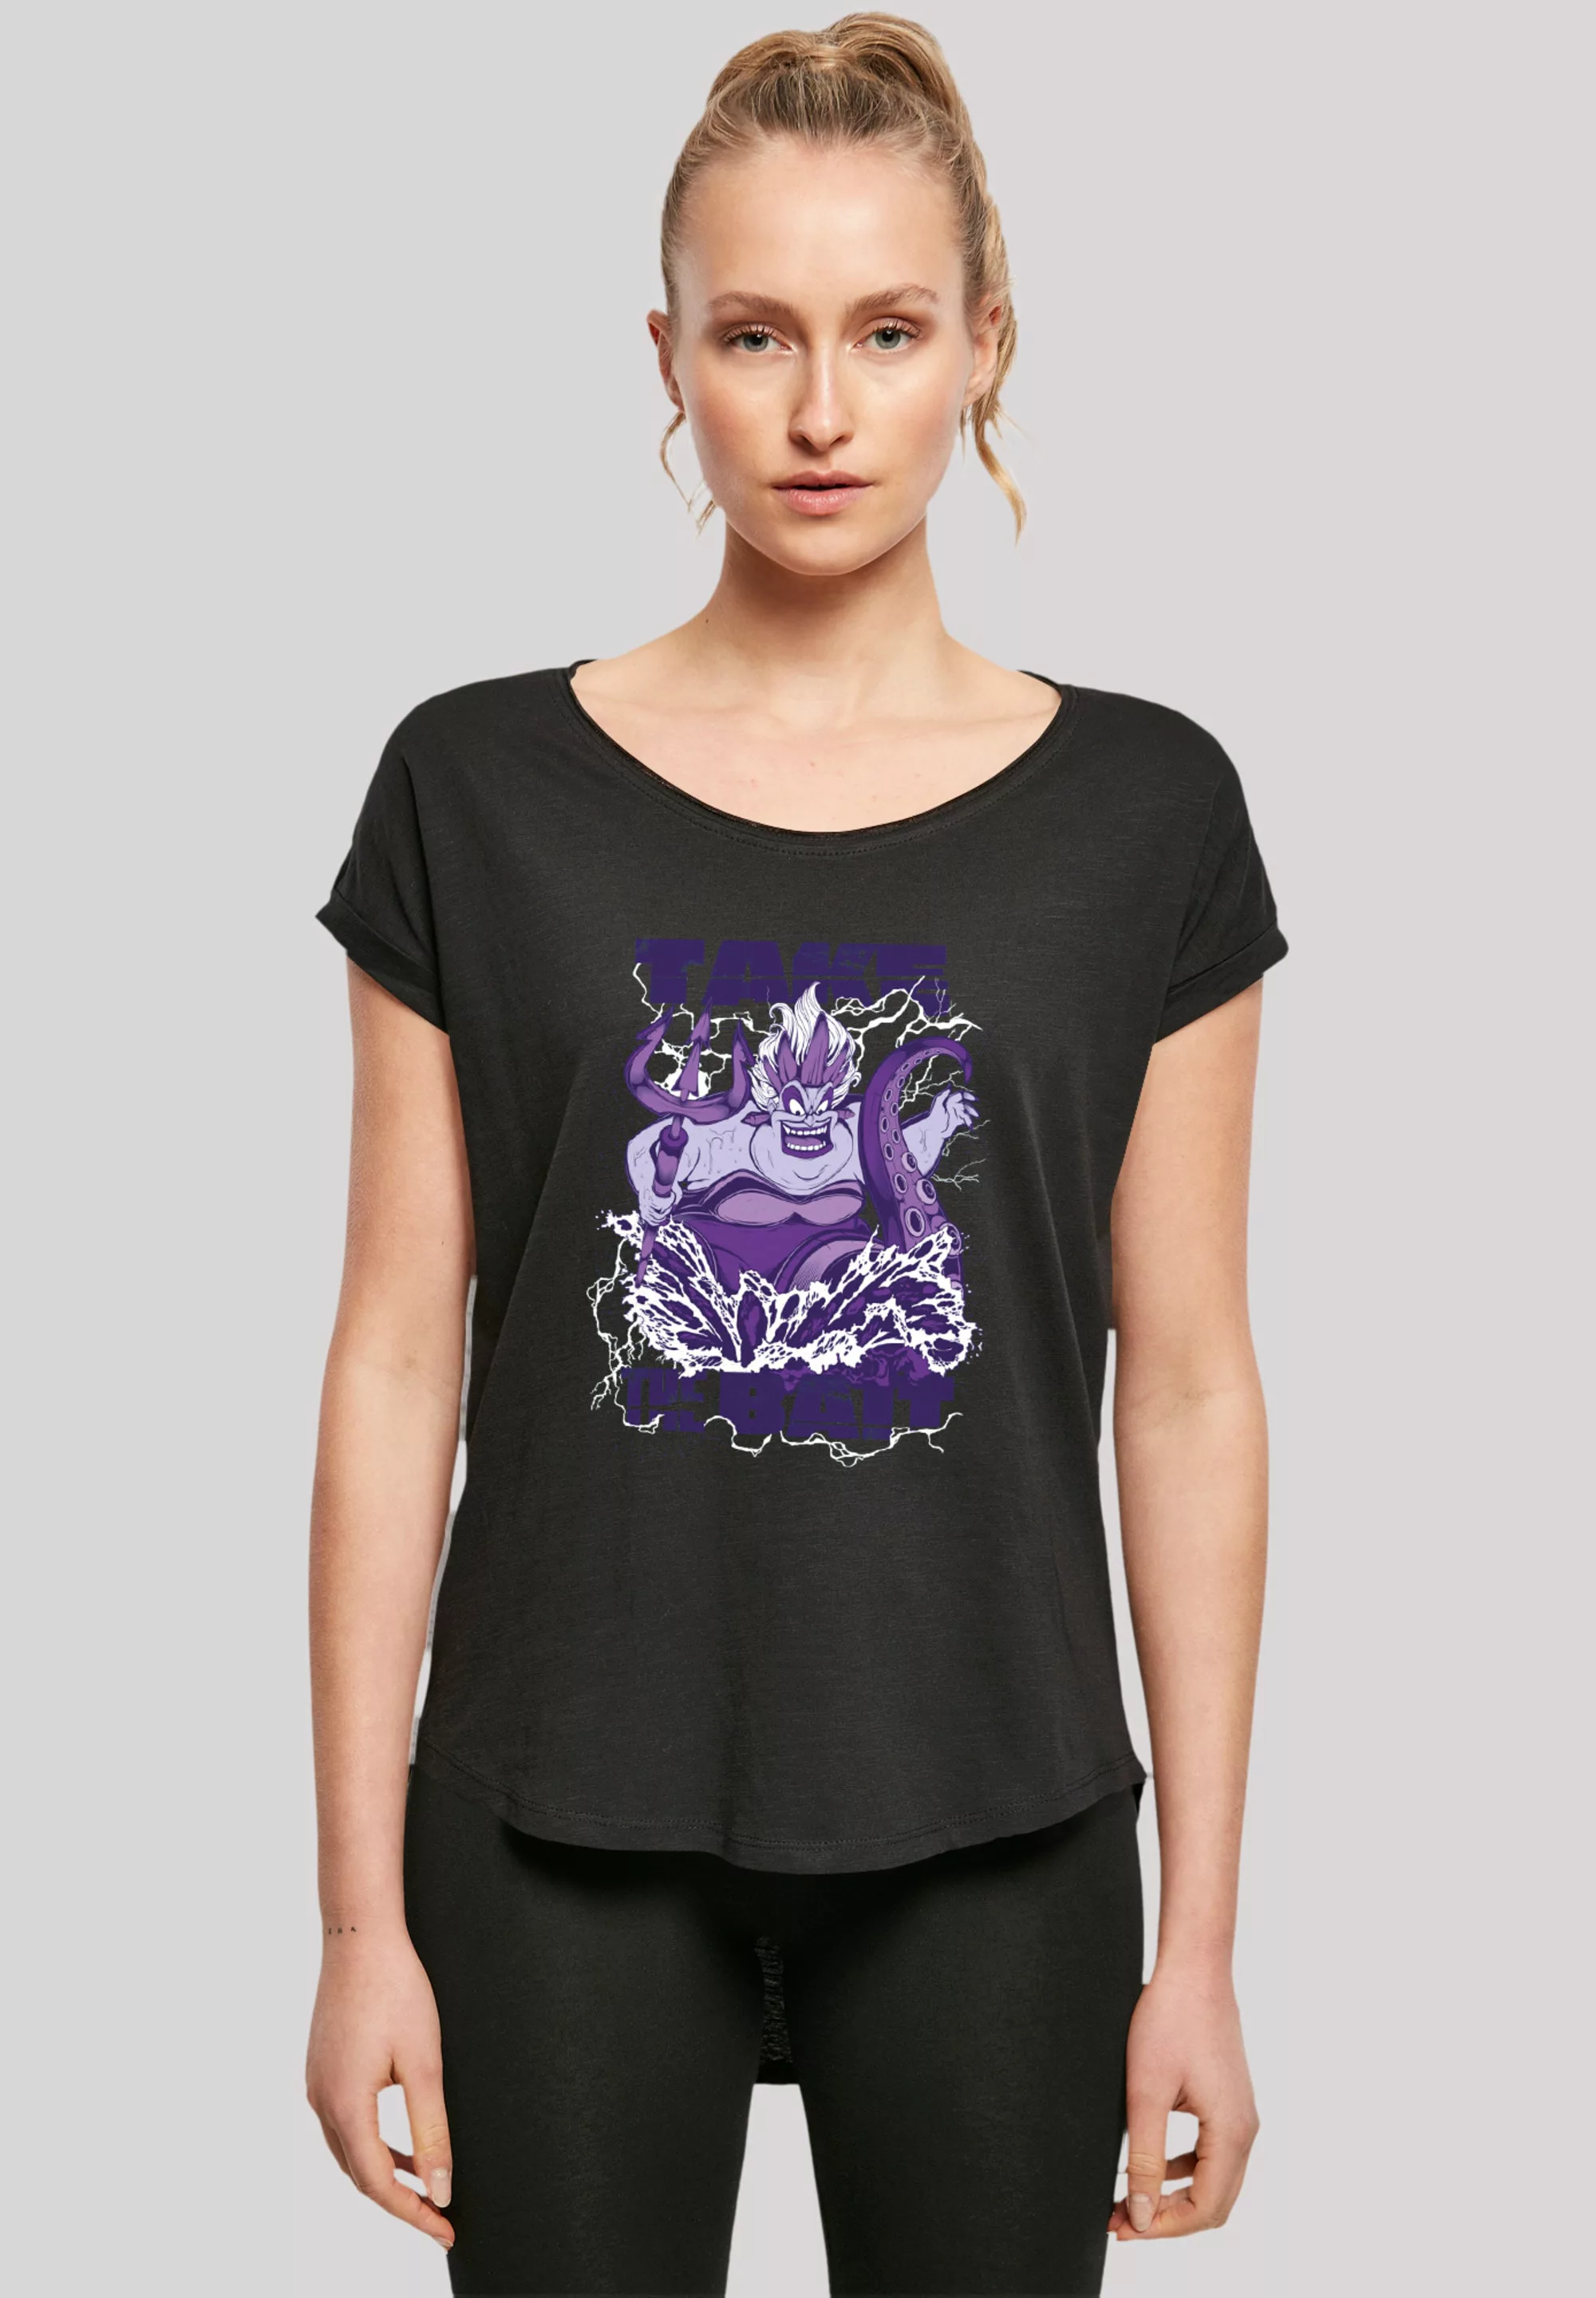 F4NT4STIC T-Shirt "Disney Villains Ursula Take The Bait", Premium Qualität günstig online kaufen